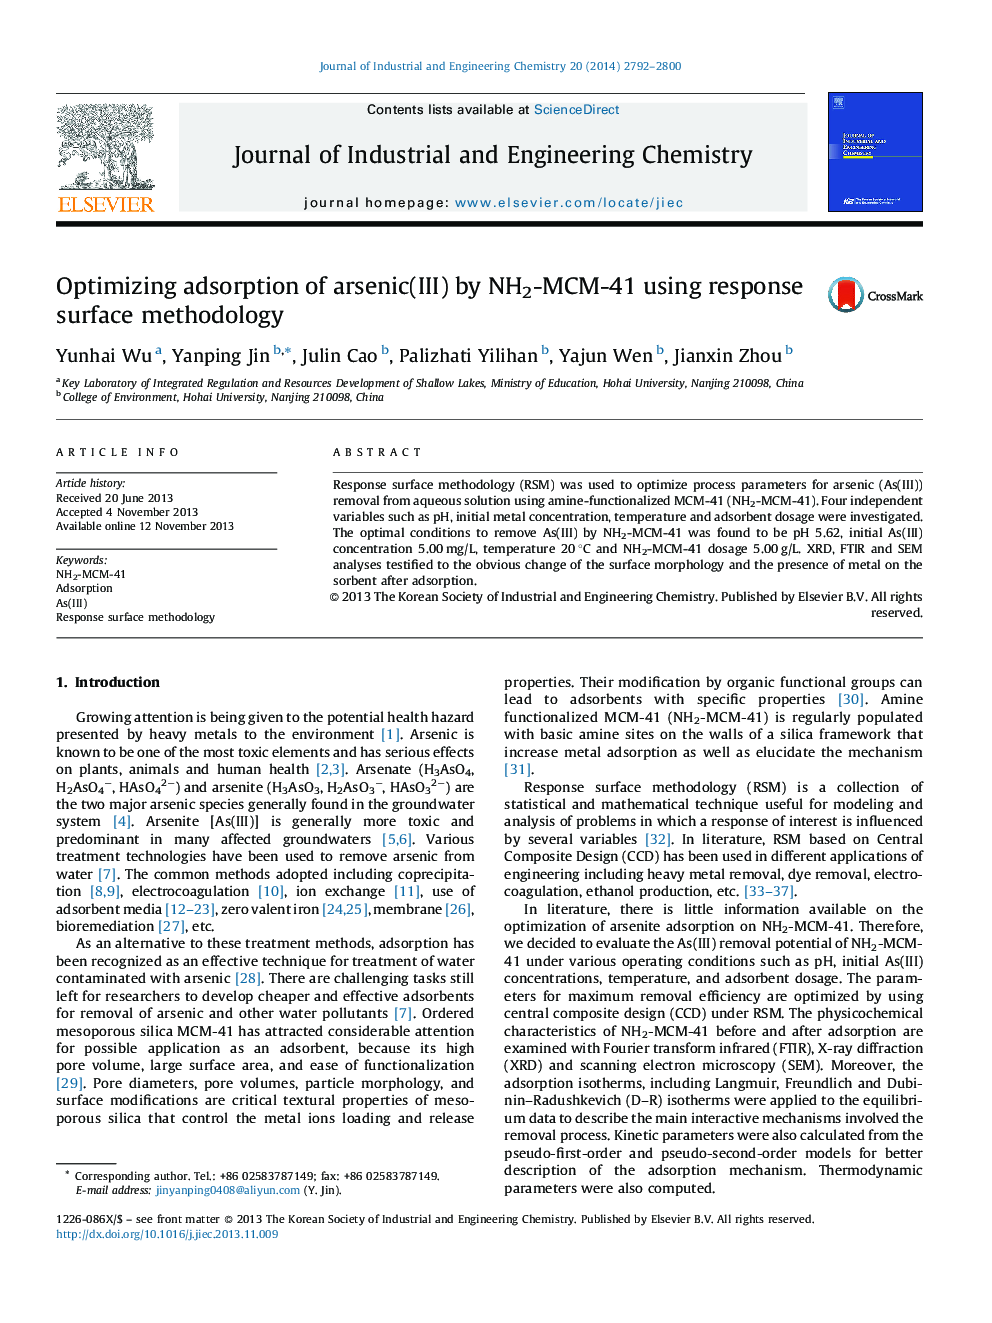 Optimizing adsorption of arsenic(III) by NH2-MCM-41 using response surface methodology